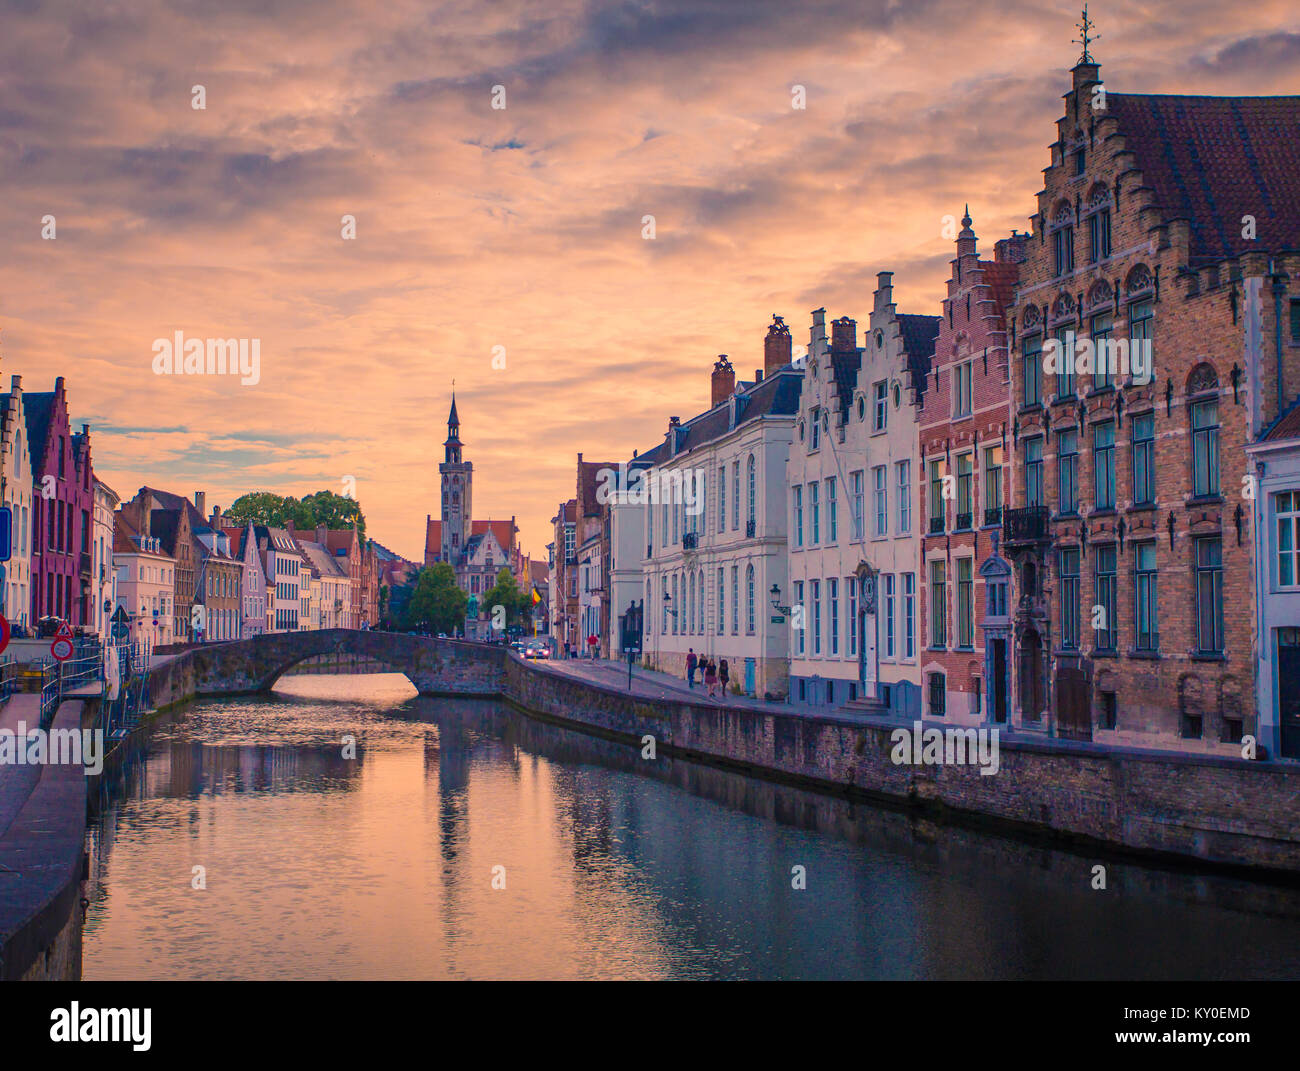 Brugge abend Stadtbild. Alte Gebäude am Wasser Kanal in Brügge, Belgien. Stockfoto